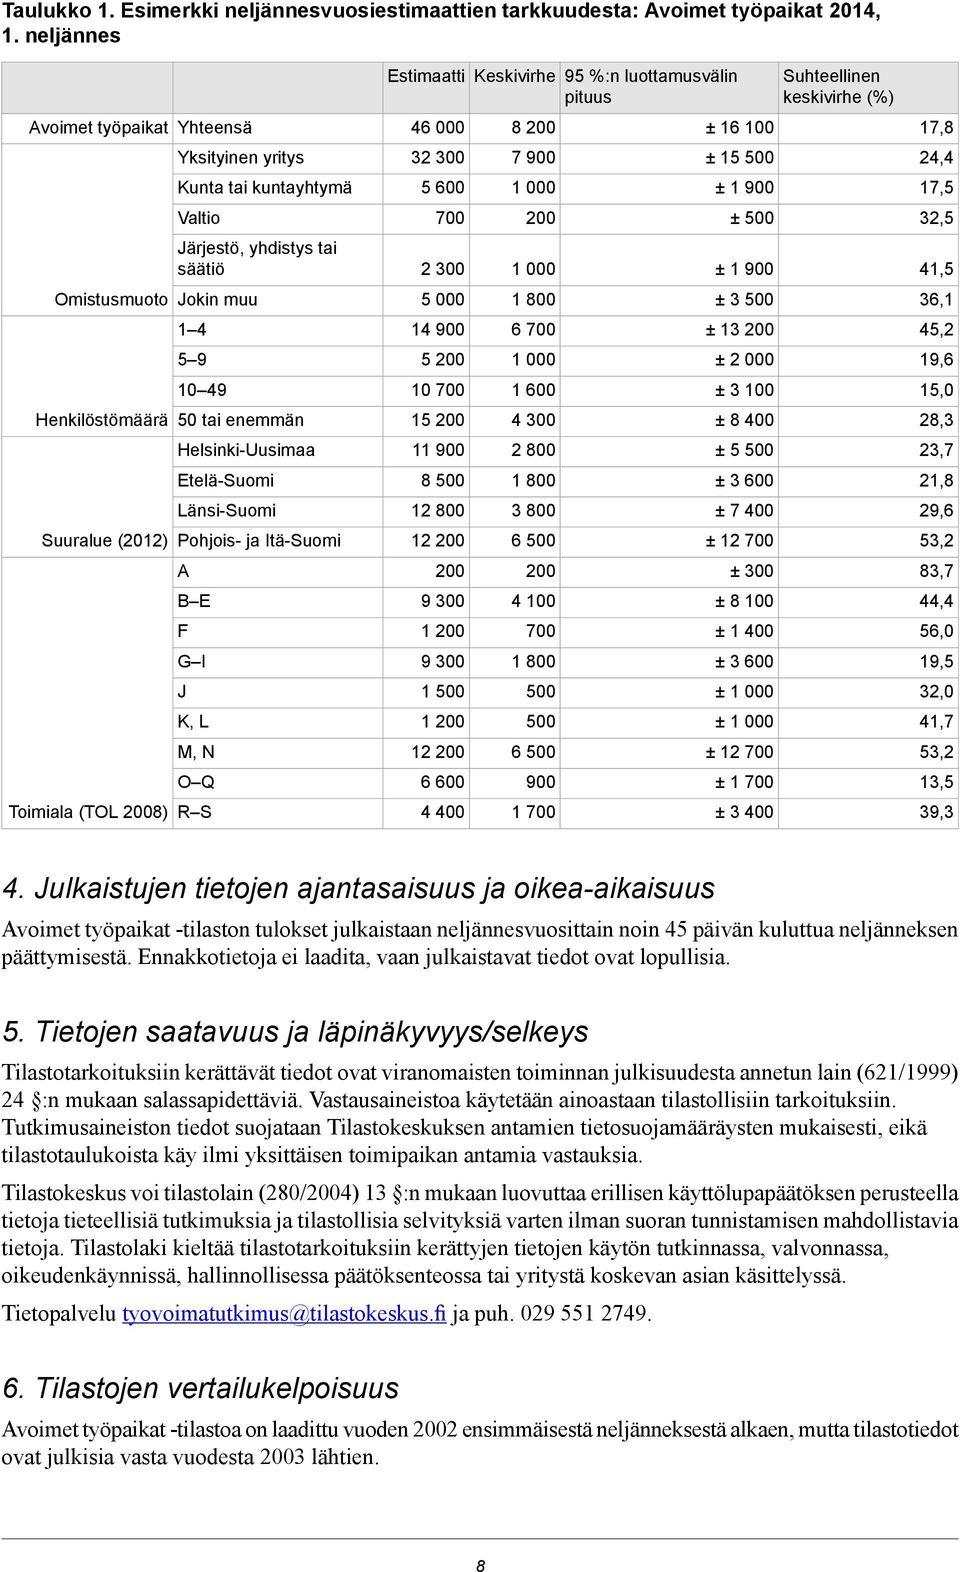 Etelä-Suomi Länsi-Suomi Suuralue (2012) Pohjois- ja Itä-Suomi A B E F G I Toimiala (TOL 2008) R S J K, L M, N O Q Estimaatti Keskivirhe 95 %:n luottamusvälin pituus 46 000 32 300 5 600 700 2 300 5